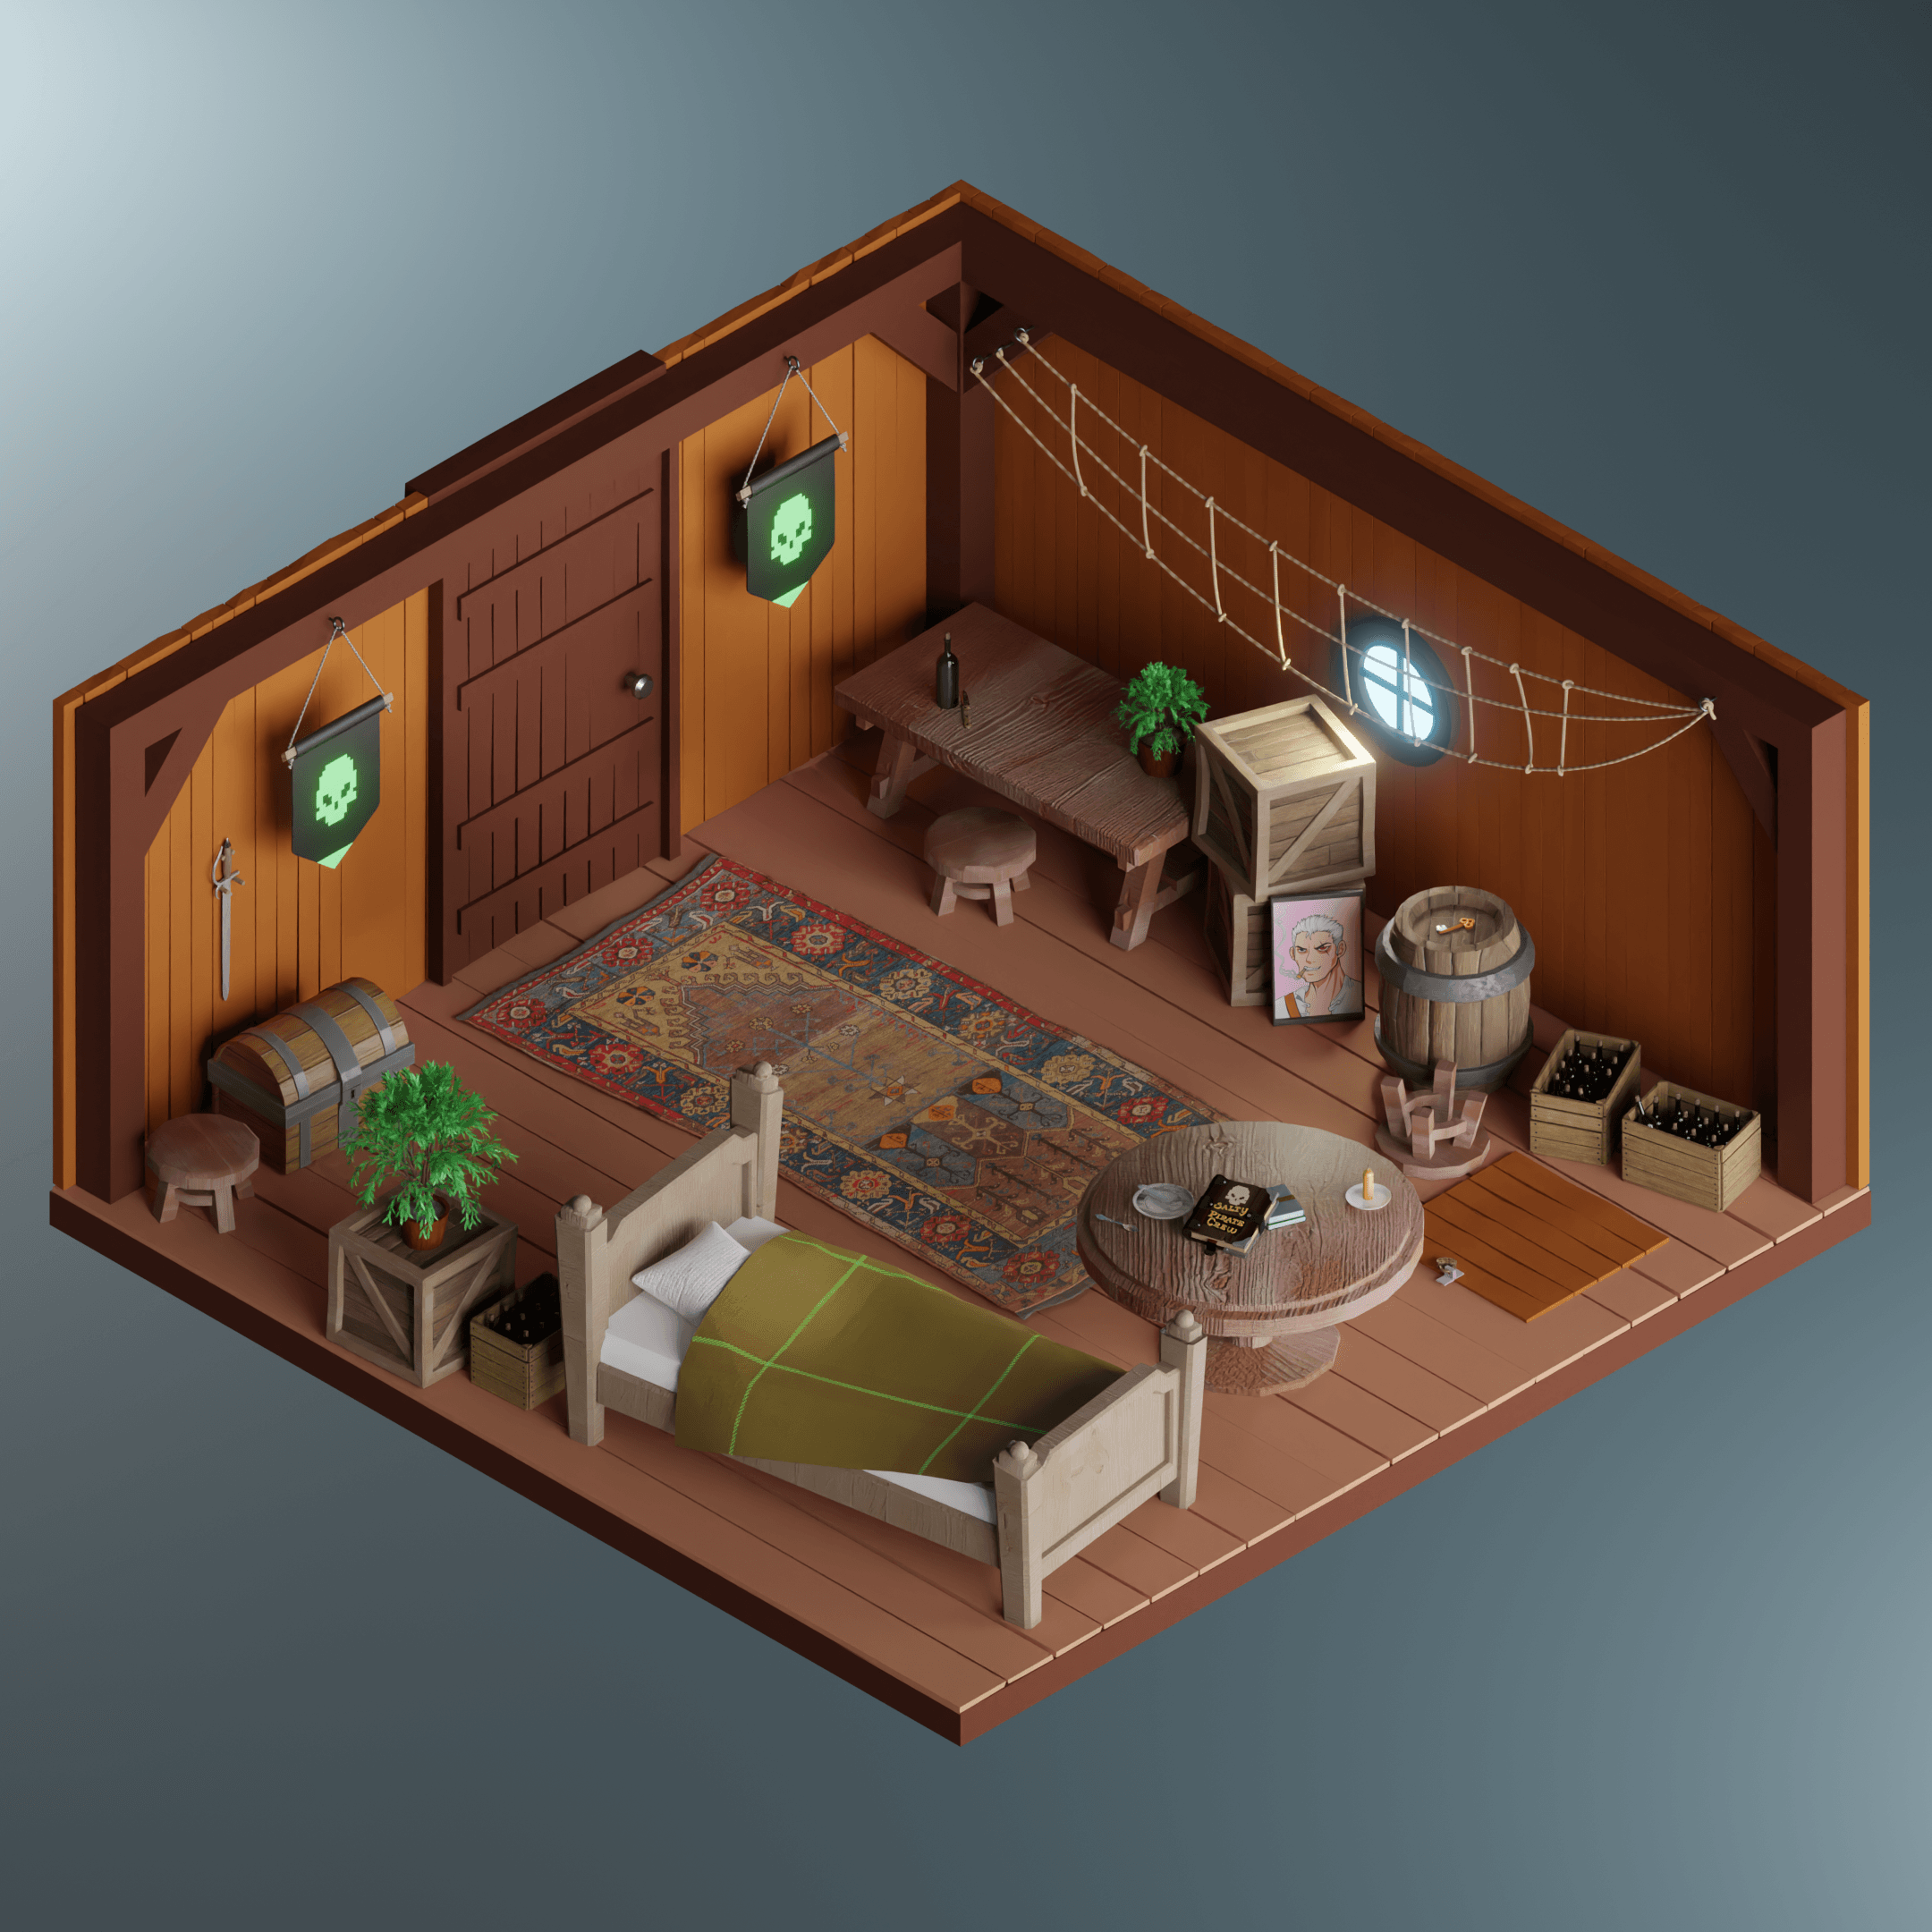 Comfort Cabin 23